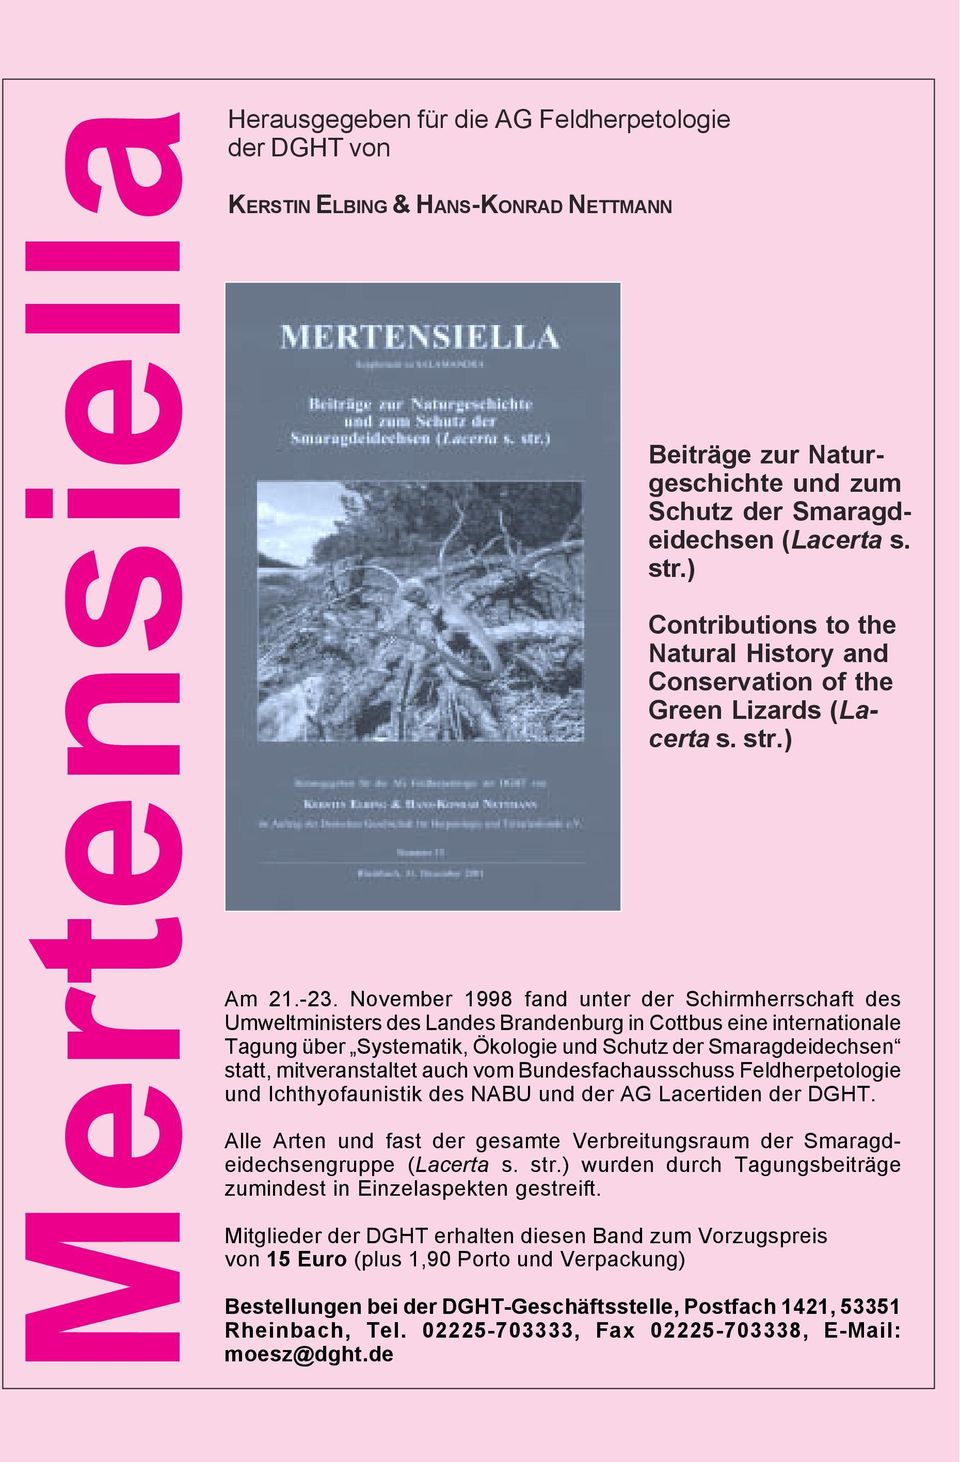 November 1998 fand unter der Schirmherrschaft des Umweltministers des Landes Brandenburg in Cottbus eine internationale Tagung über Systematik, Ökologie und Schutz der Smaragdeidechsen statt,